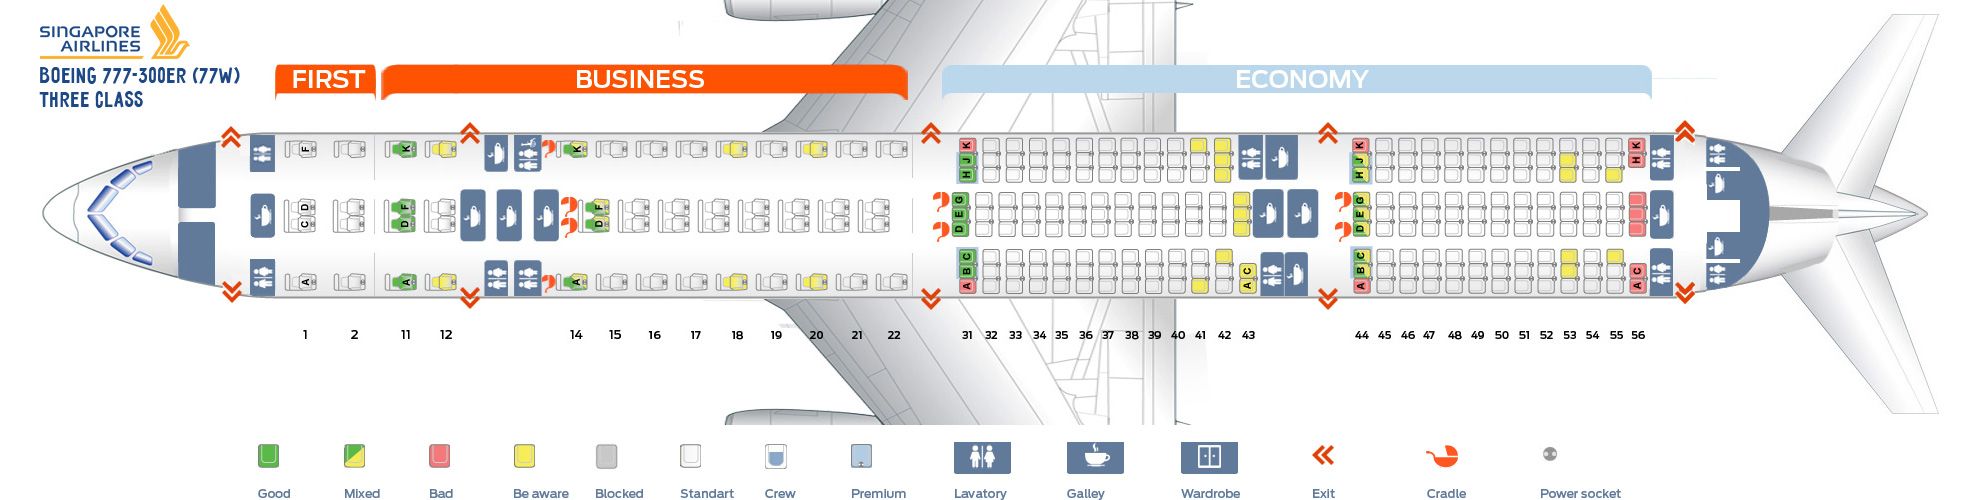 seating plan boeing 777-300er